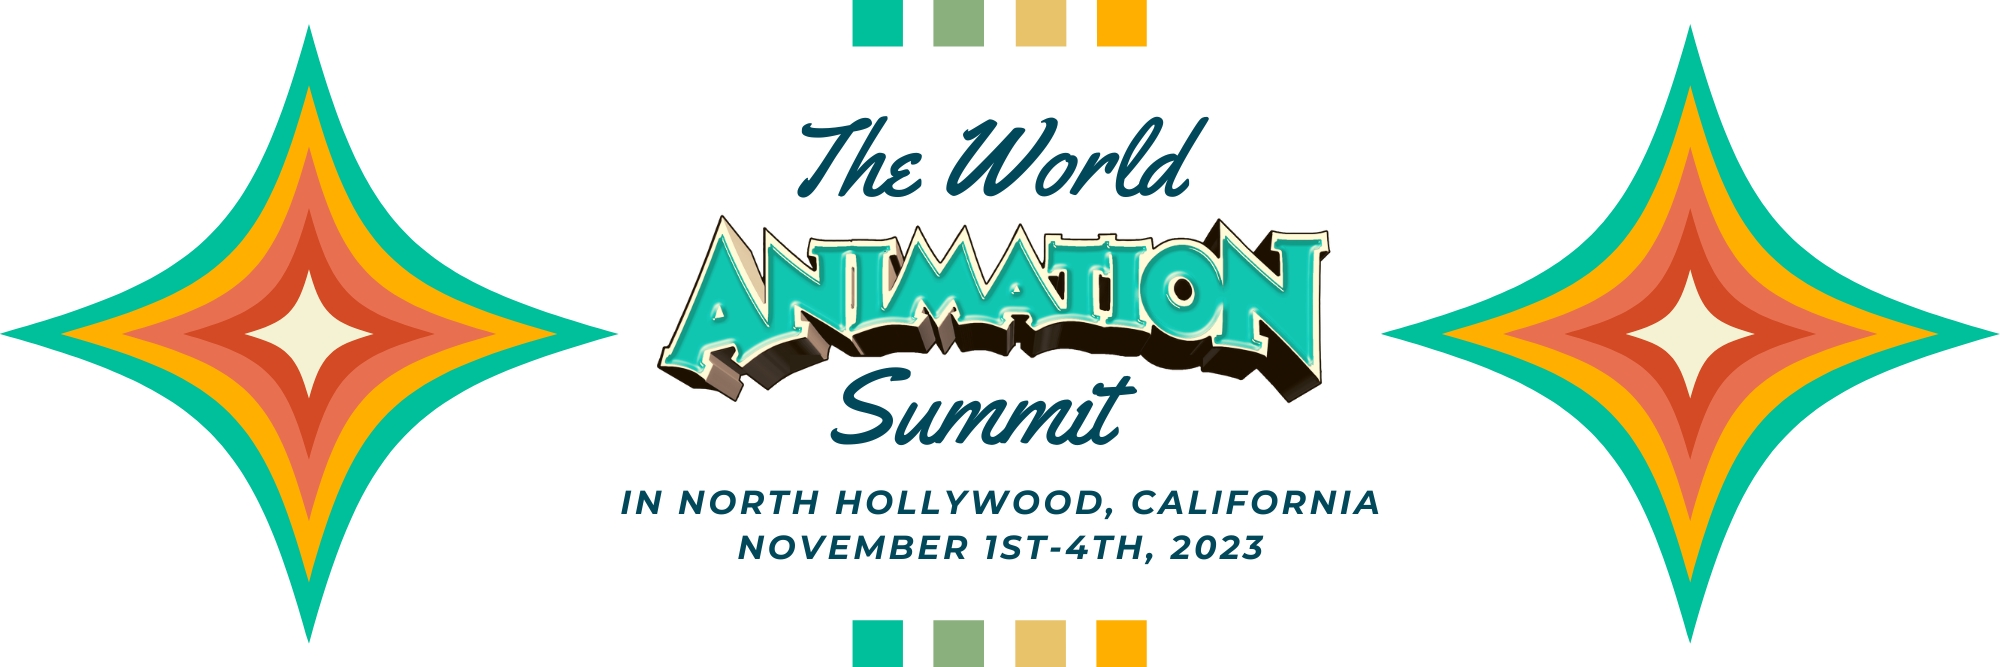 The World Animation Summit